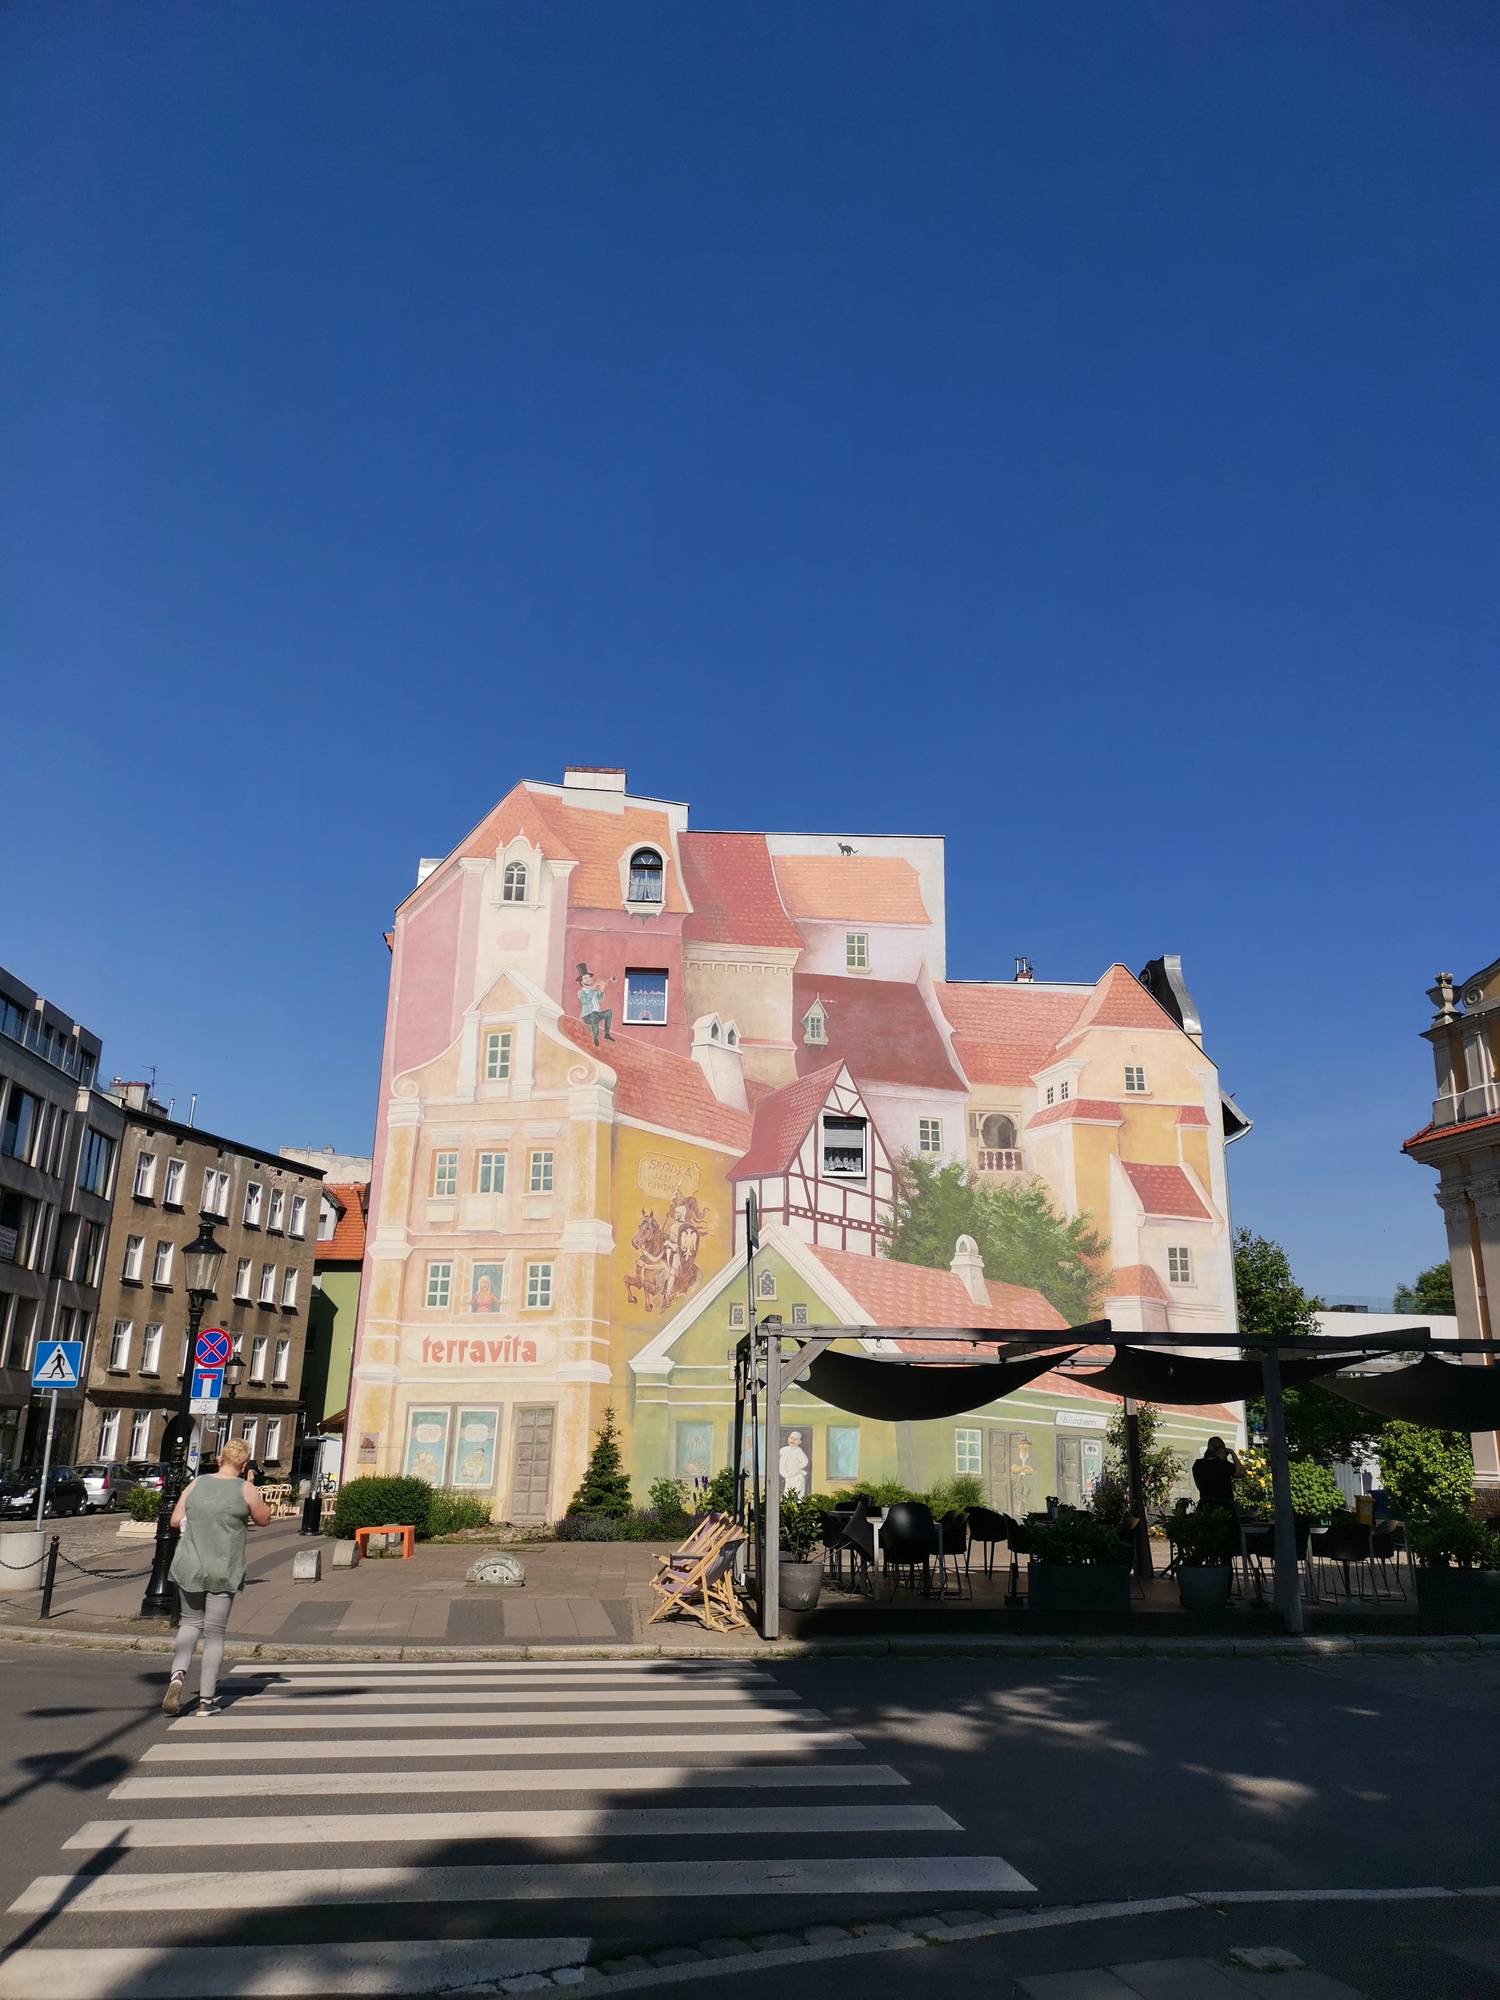 Śródka kerület leghíresebb, 3D-s falfestménye, ami az egykori piacnegyednek állít emléket.